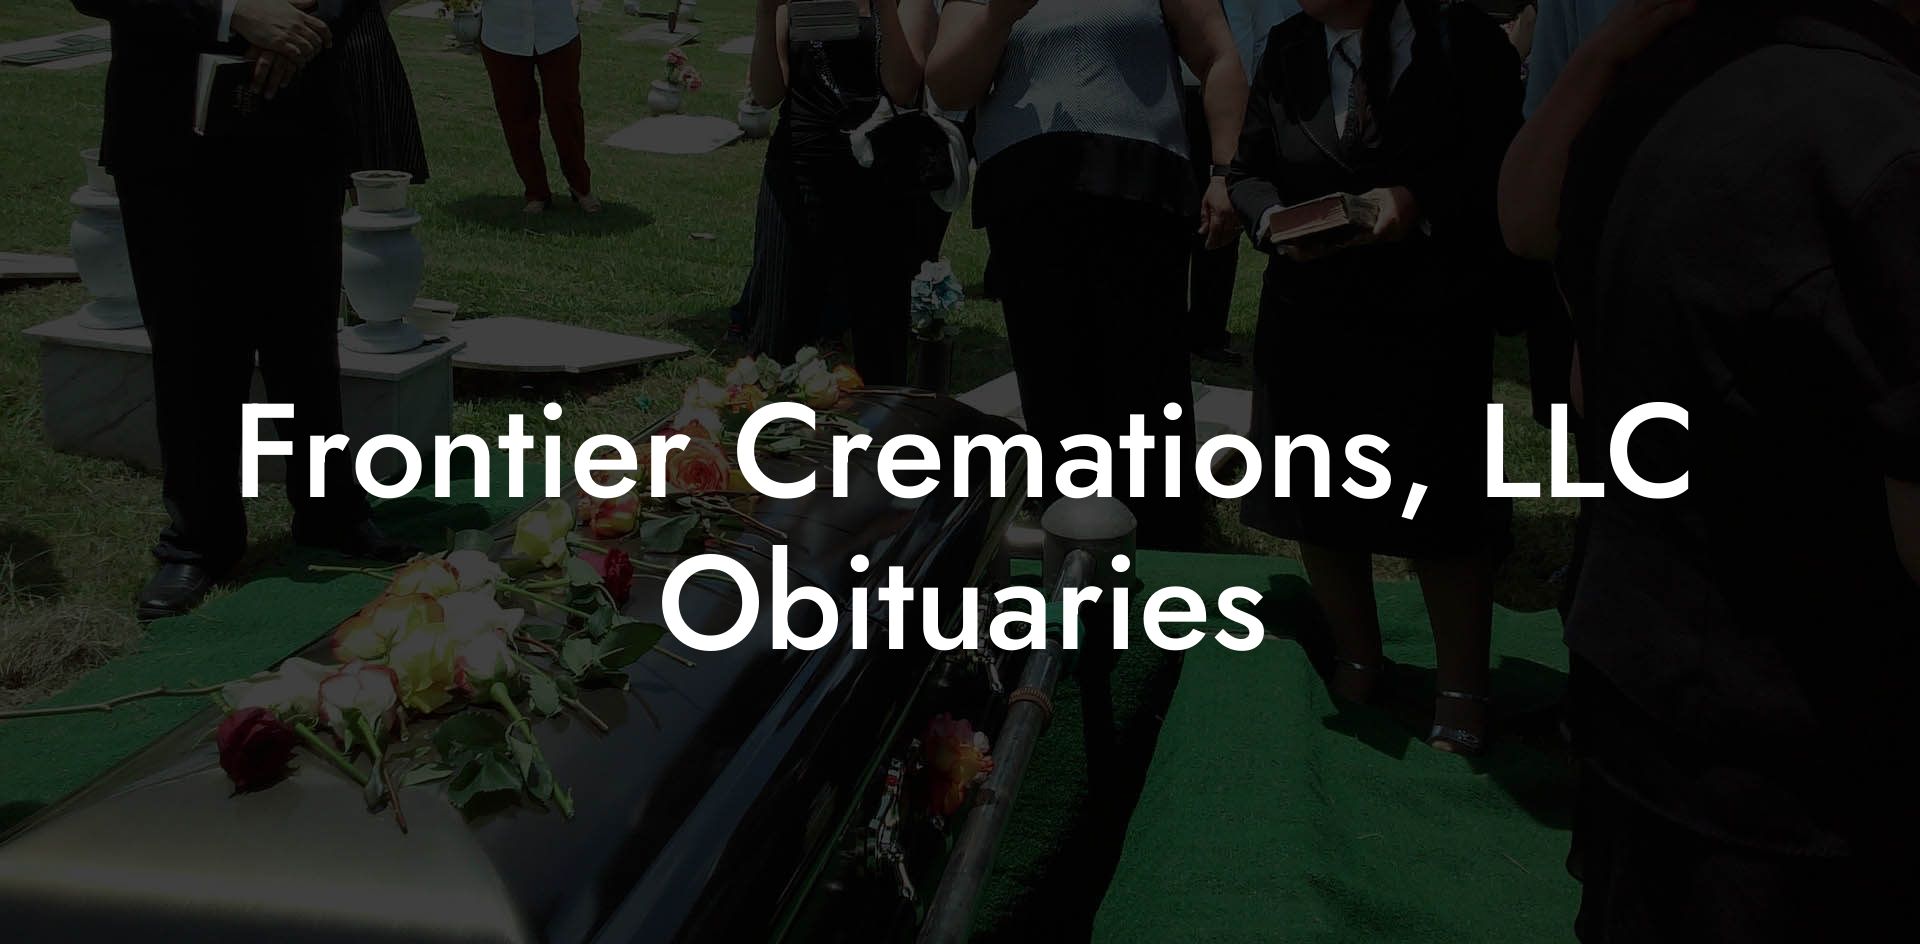 Frontier Cremations, LLC Obituaries